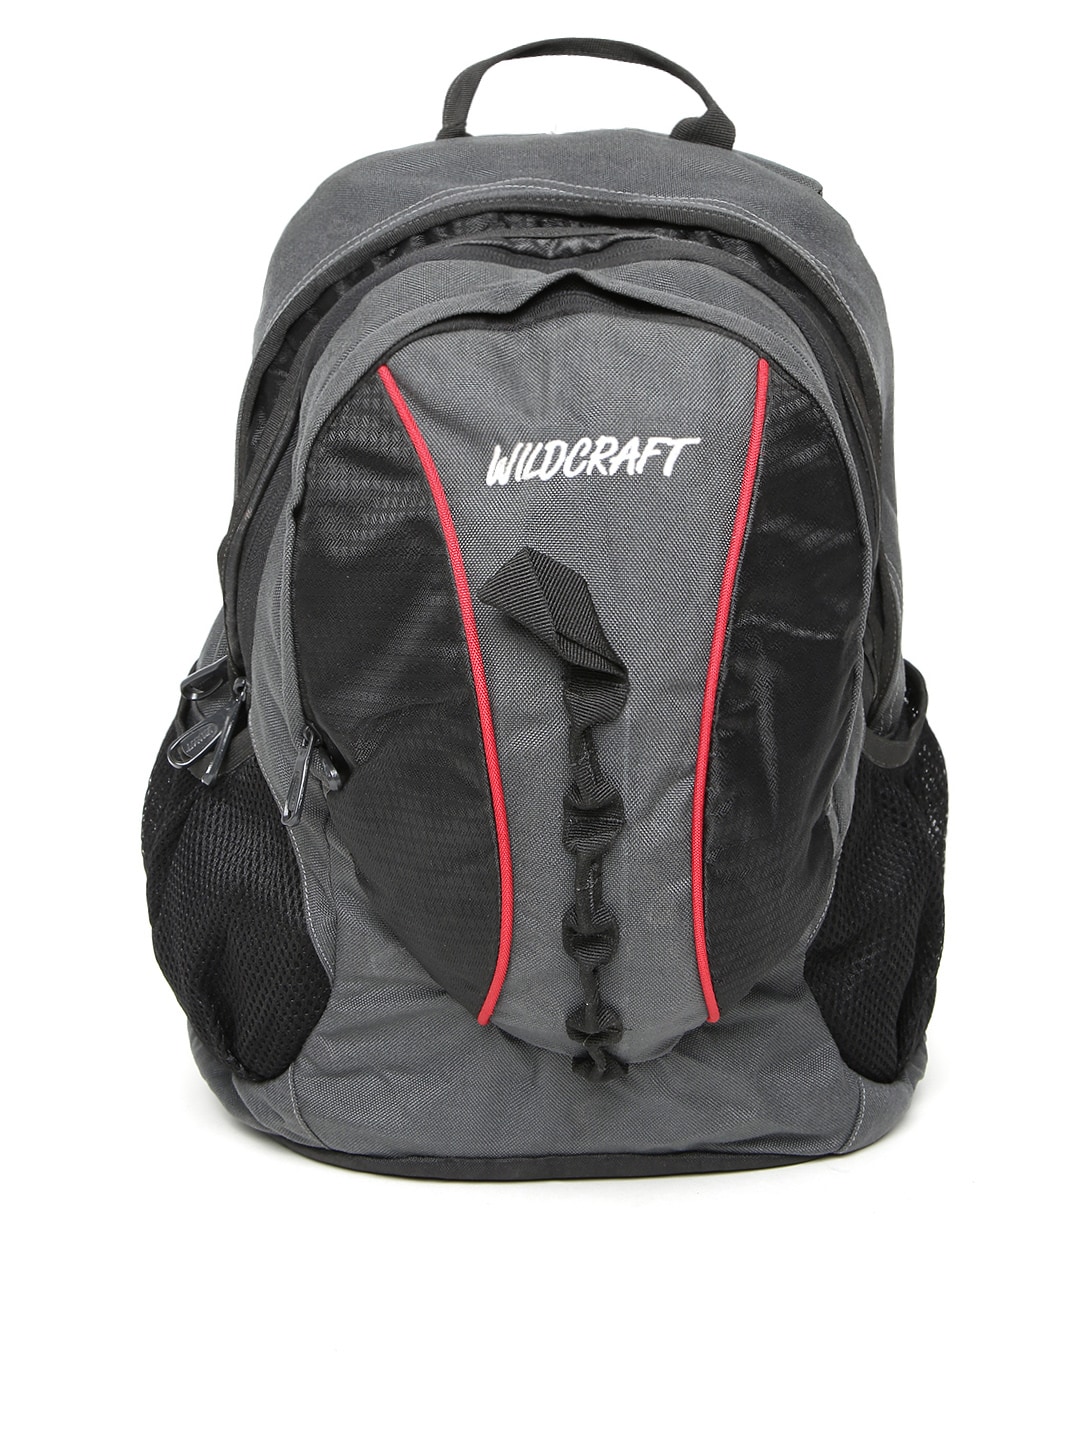 Wildcraft Unisex Black & Grey Solstice Backpack